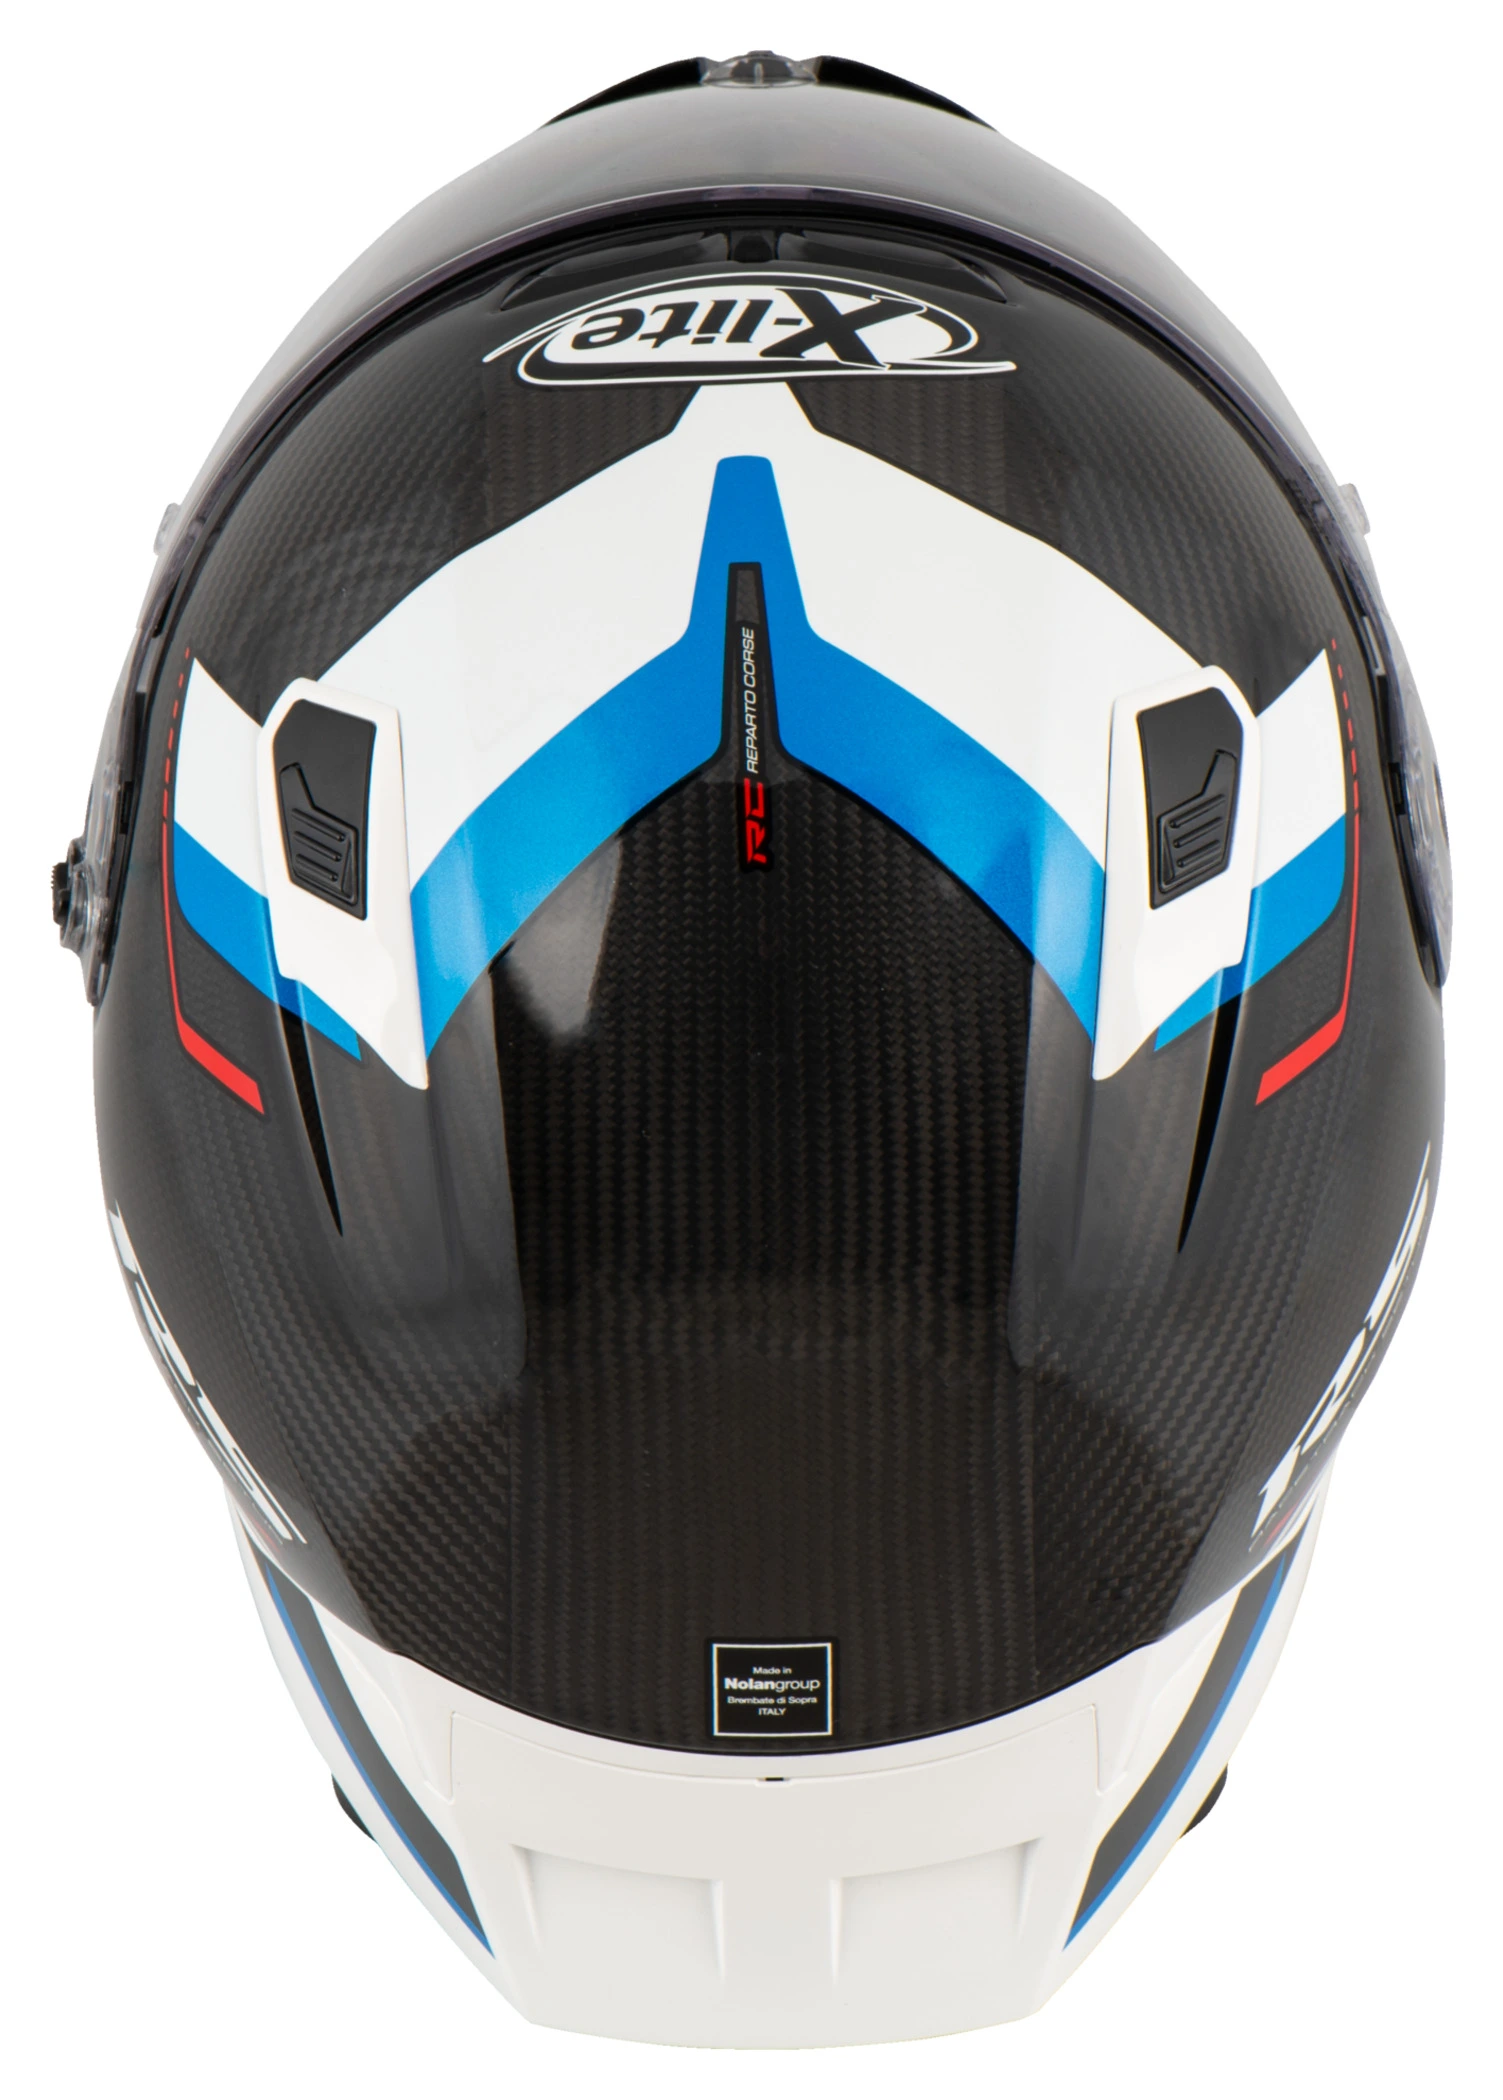 Ricambi e accessori casco moto integrale X-Lite X803 RS Ultra